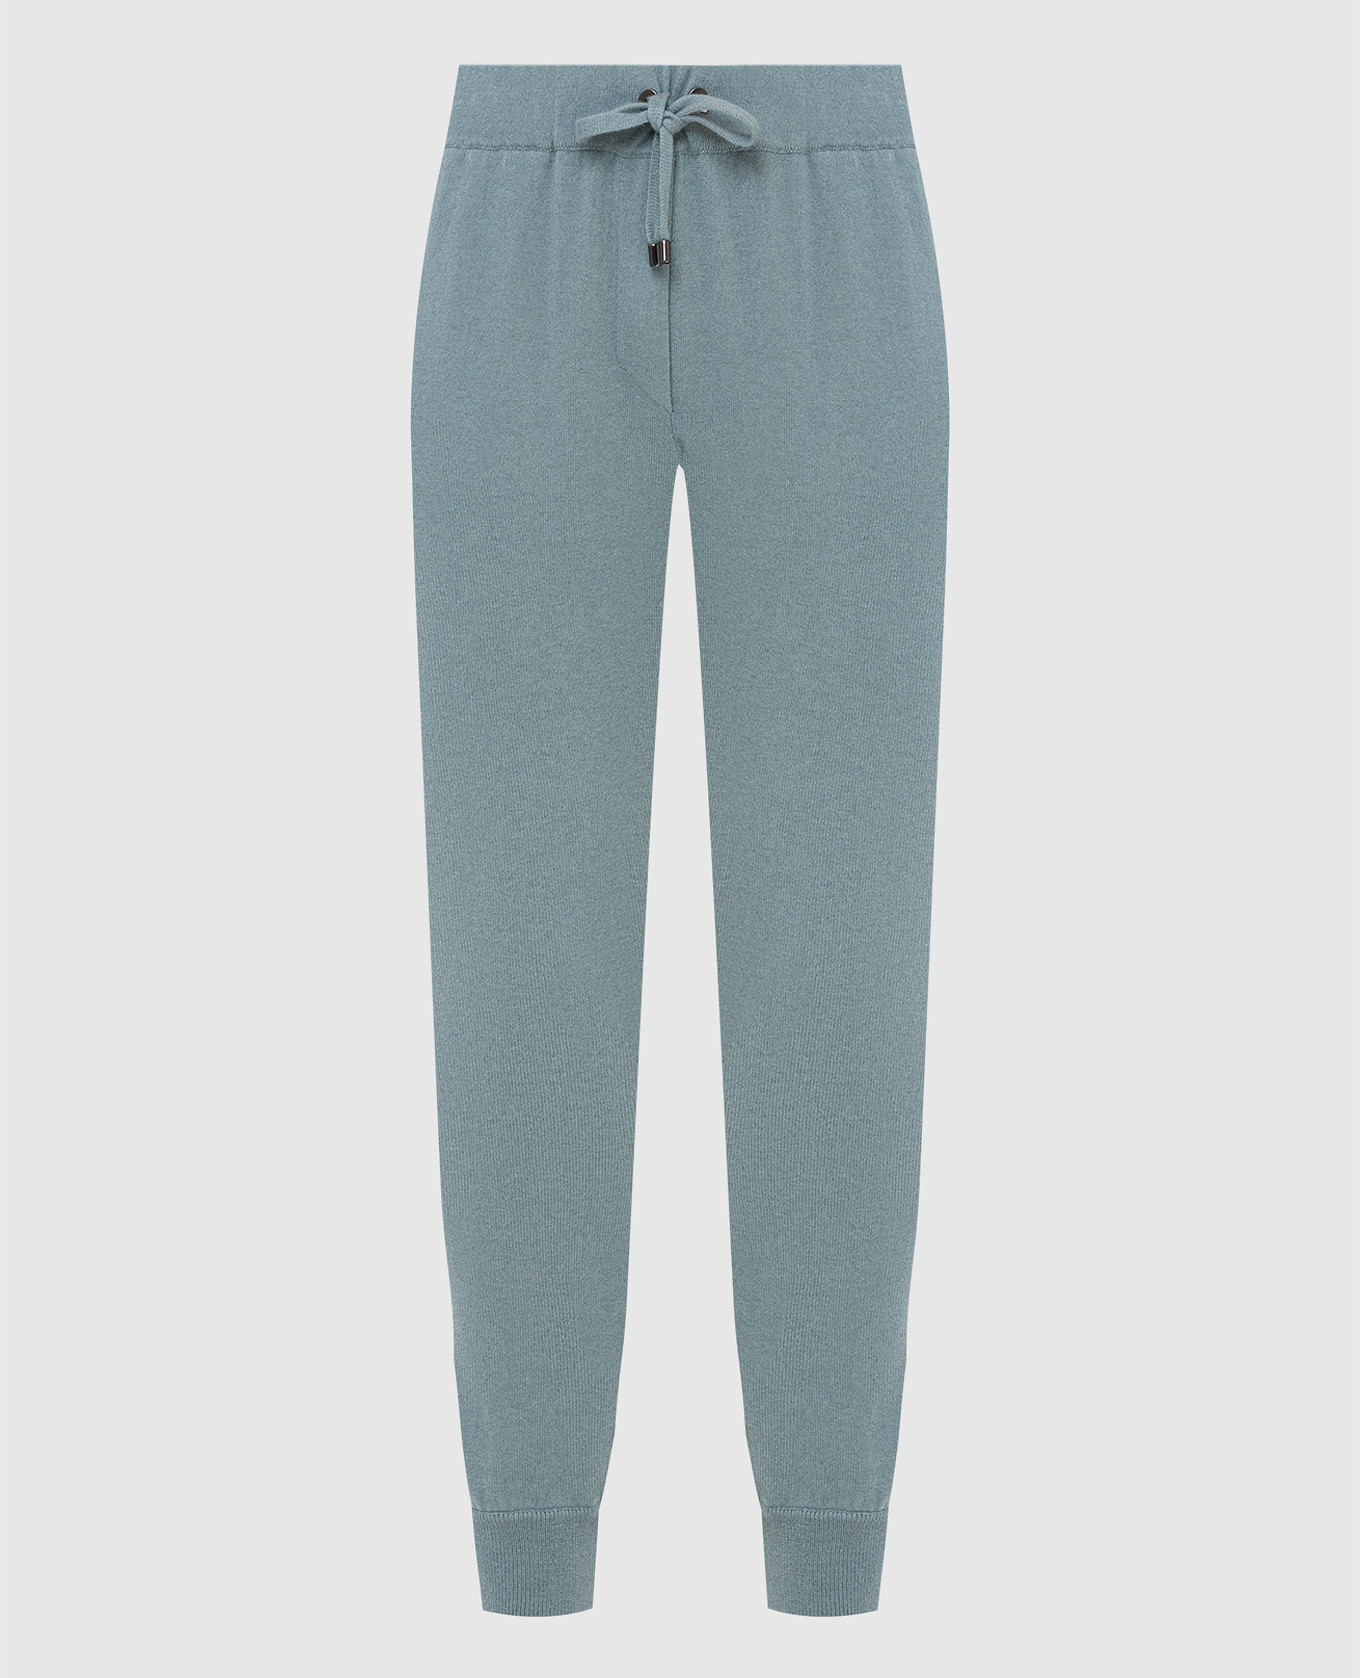 Light blue cashmere sweatpants